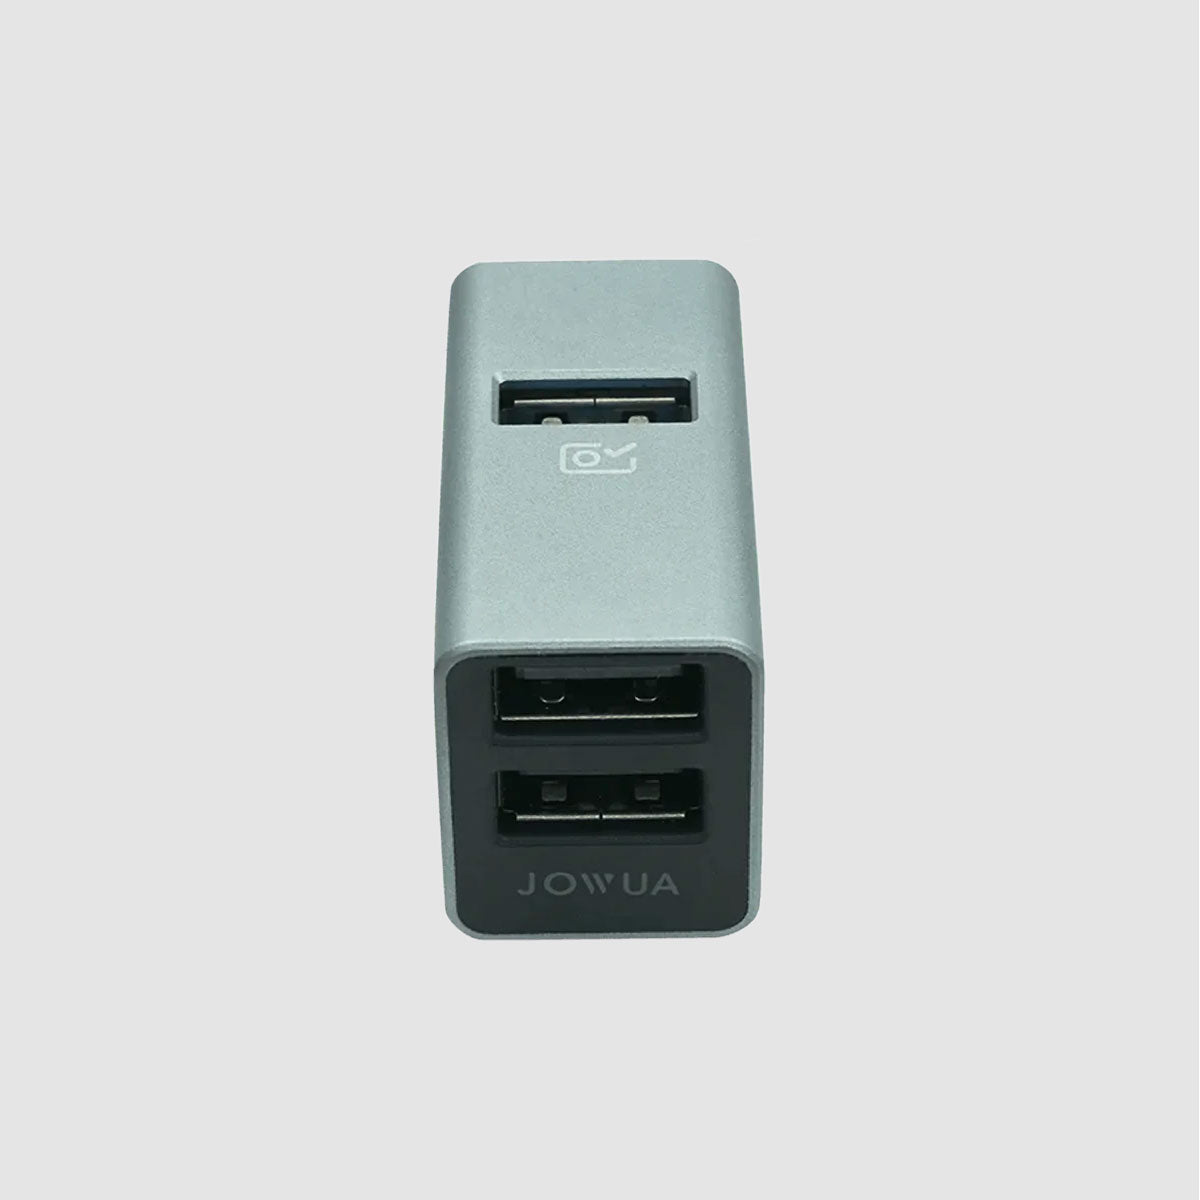 מפצל USB Dashcam - 3 יציאות